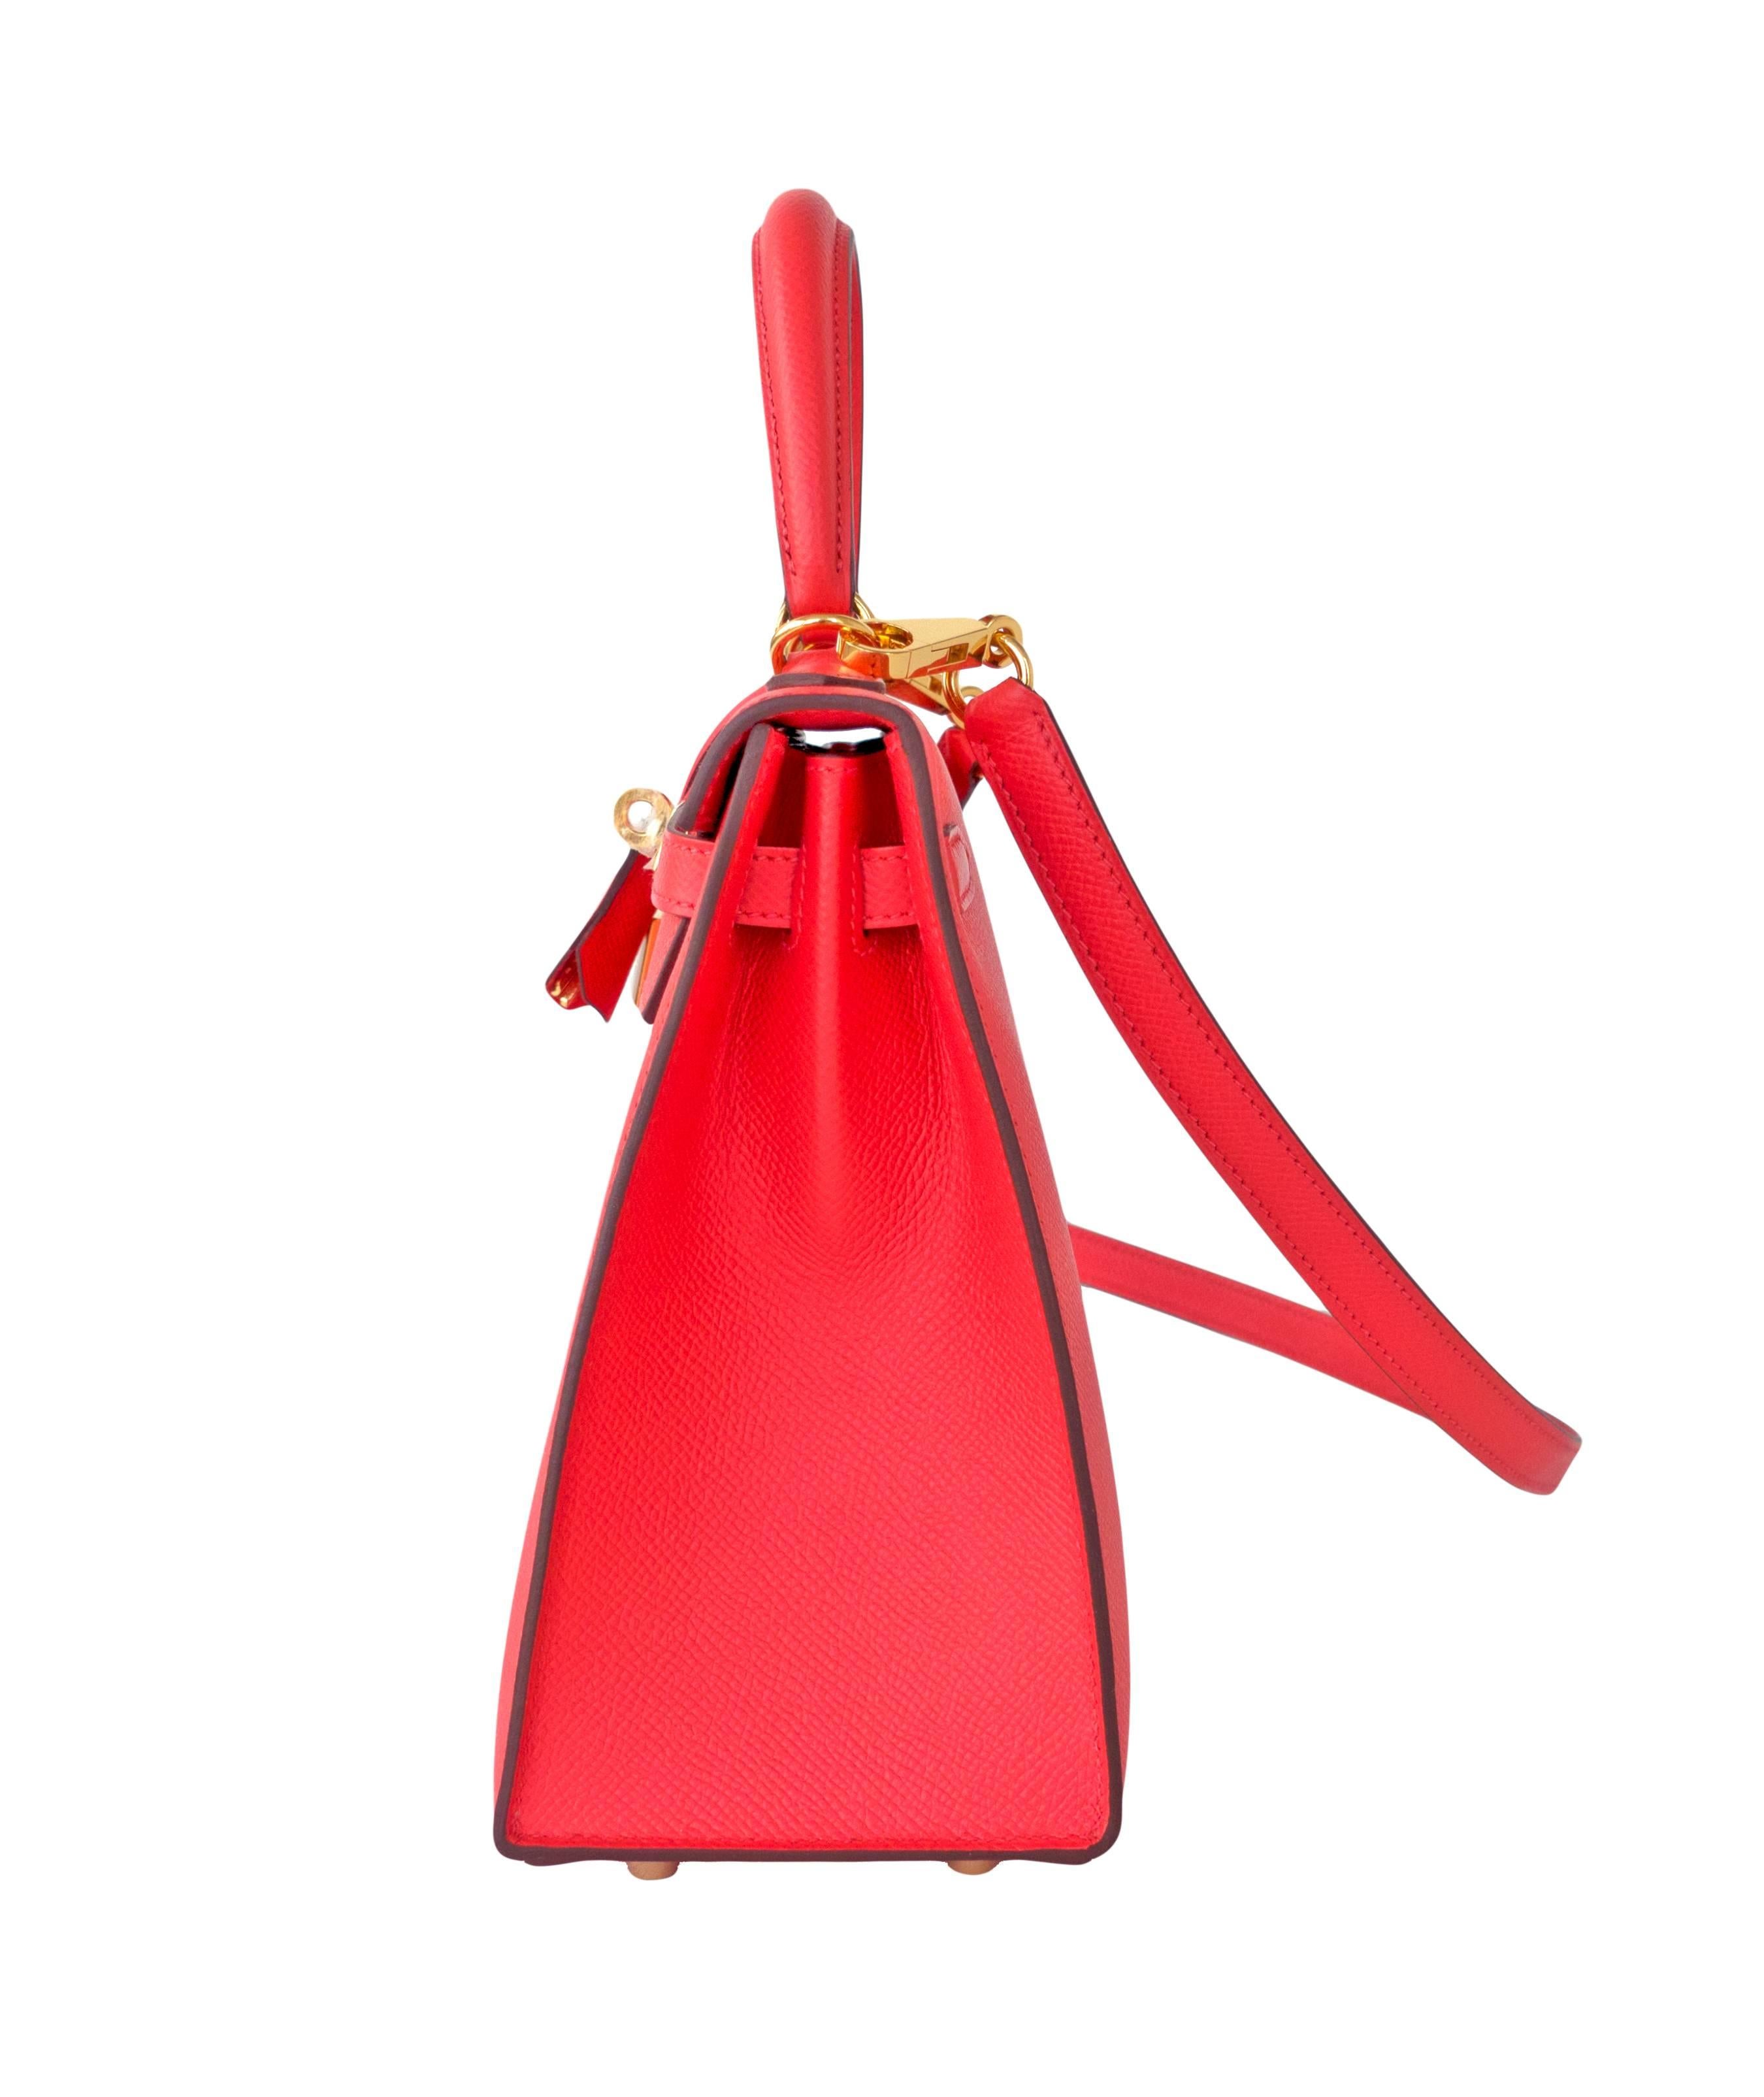 Hermes 25cm Rose Jaipur Coral Pink Red Sellier Epsom Kelly Bag Gold Jewel   1